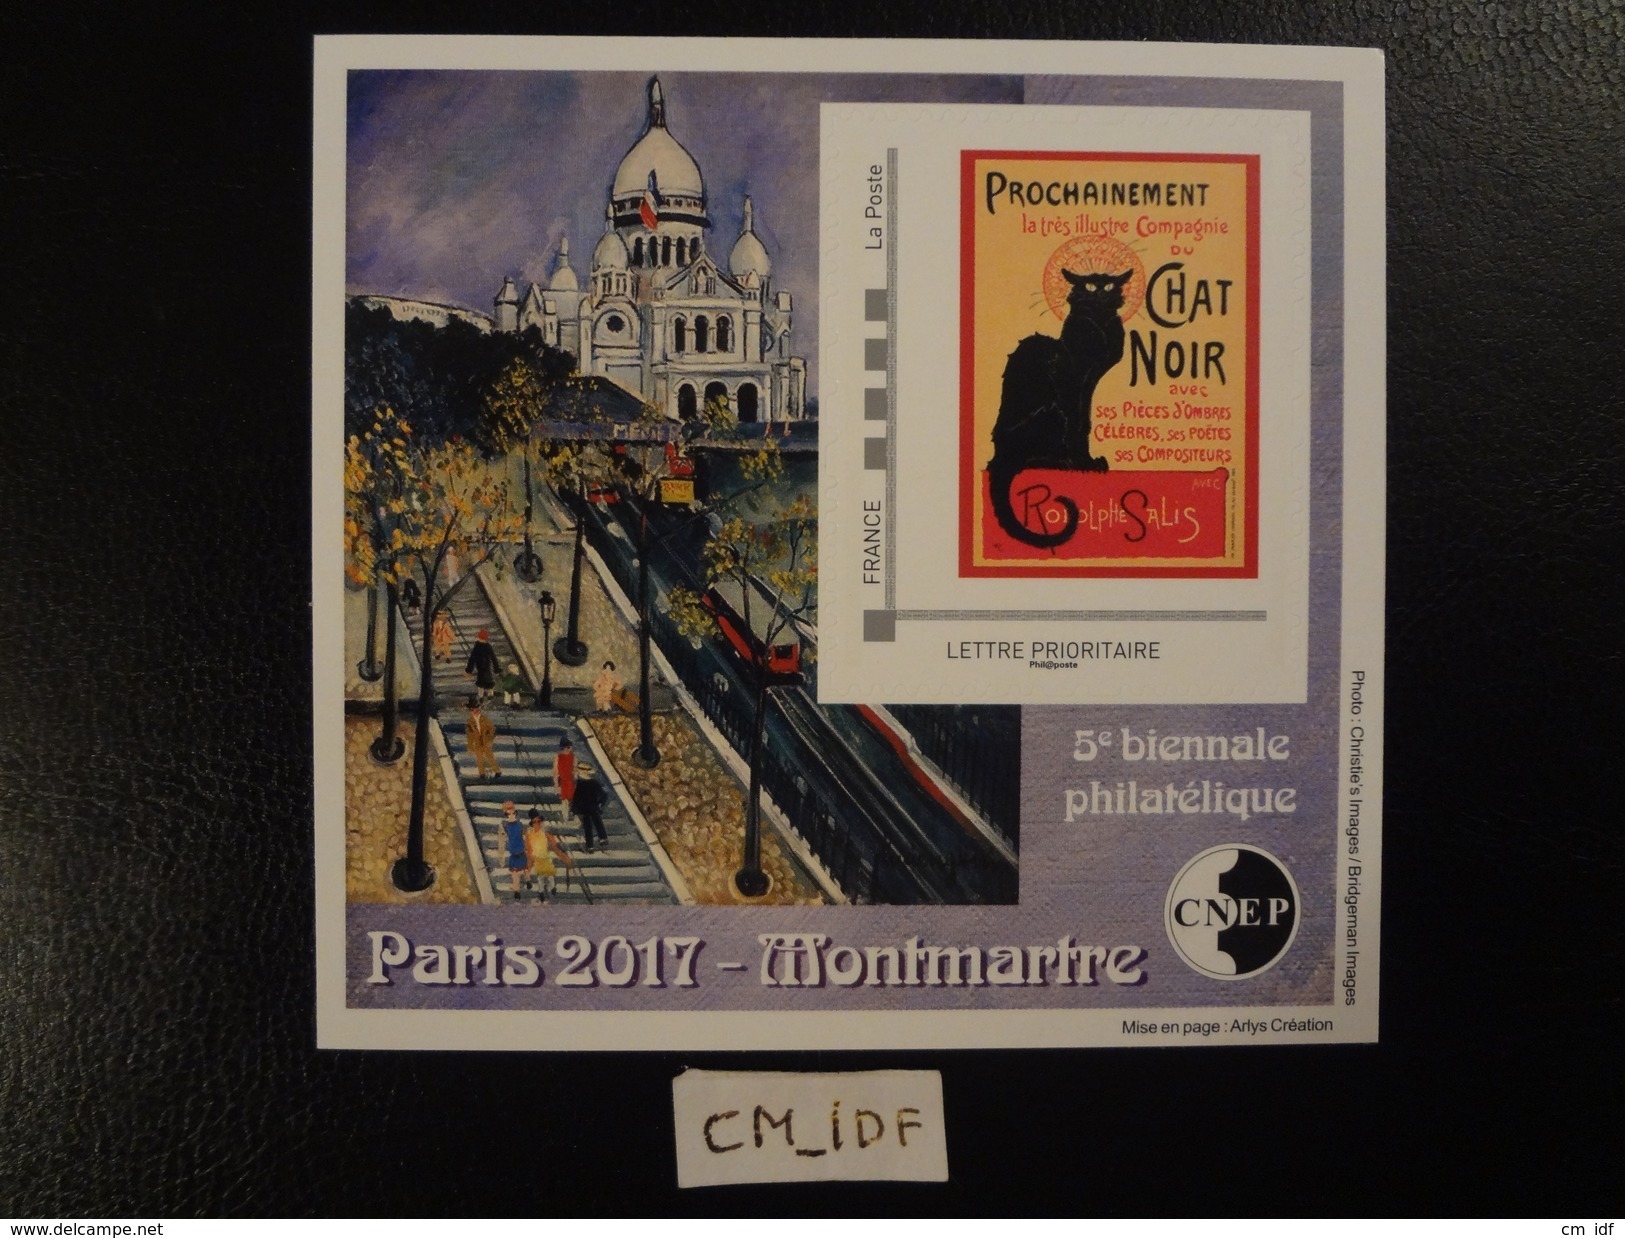 FRANCE 2017 BLOC CNEP PARIS 2017 MONTMARTRE 5 ème BIENNALE PHILATELIQUE Lettre Prioritaire " CHAT NOIR " - CNEP